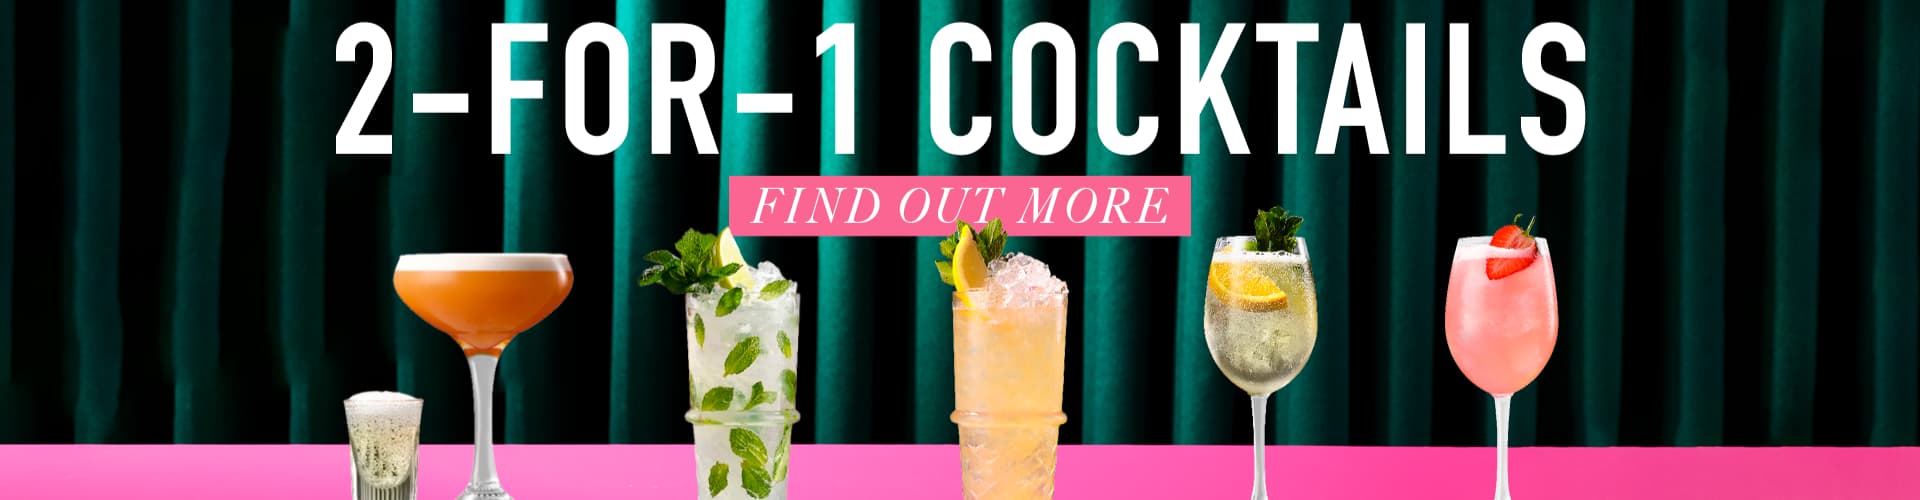 2-4-1 cocktails at Slug & Lettuce Oxford